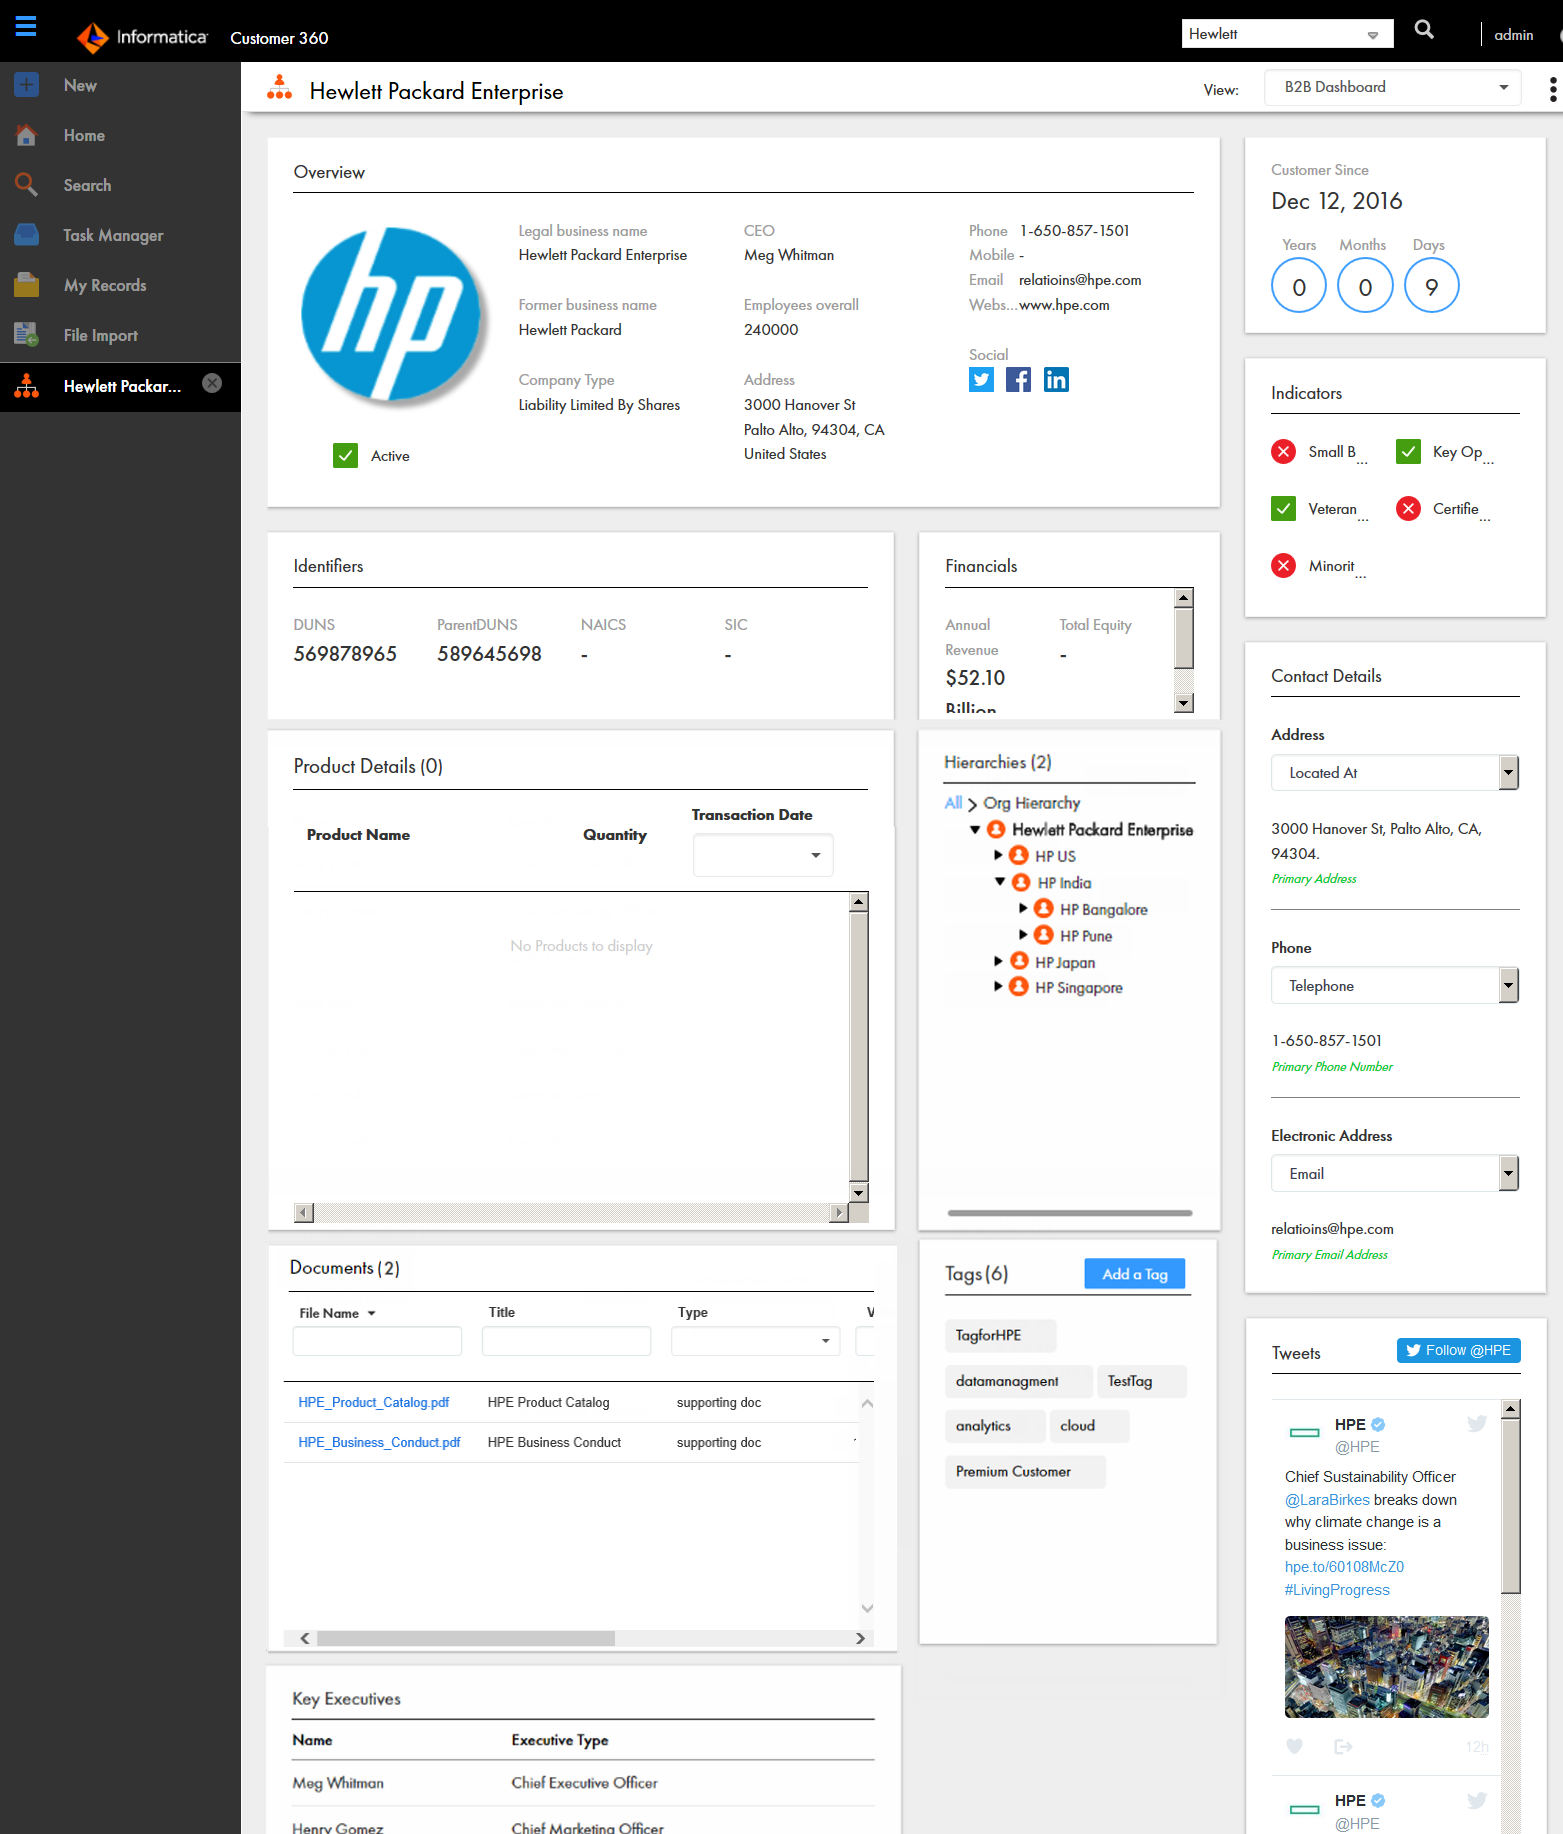 Dashboard view of an organization customer displaying the customer data